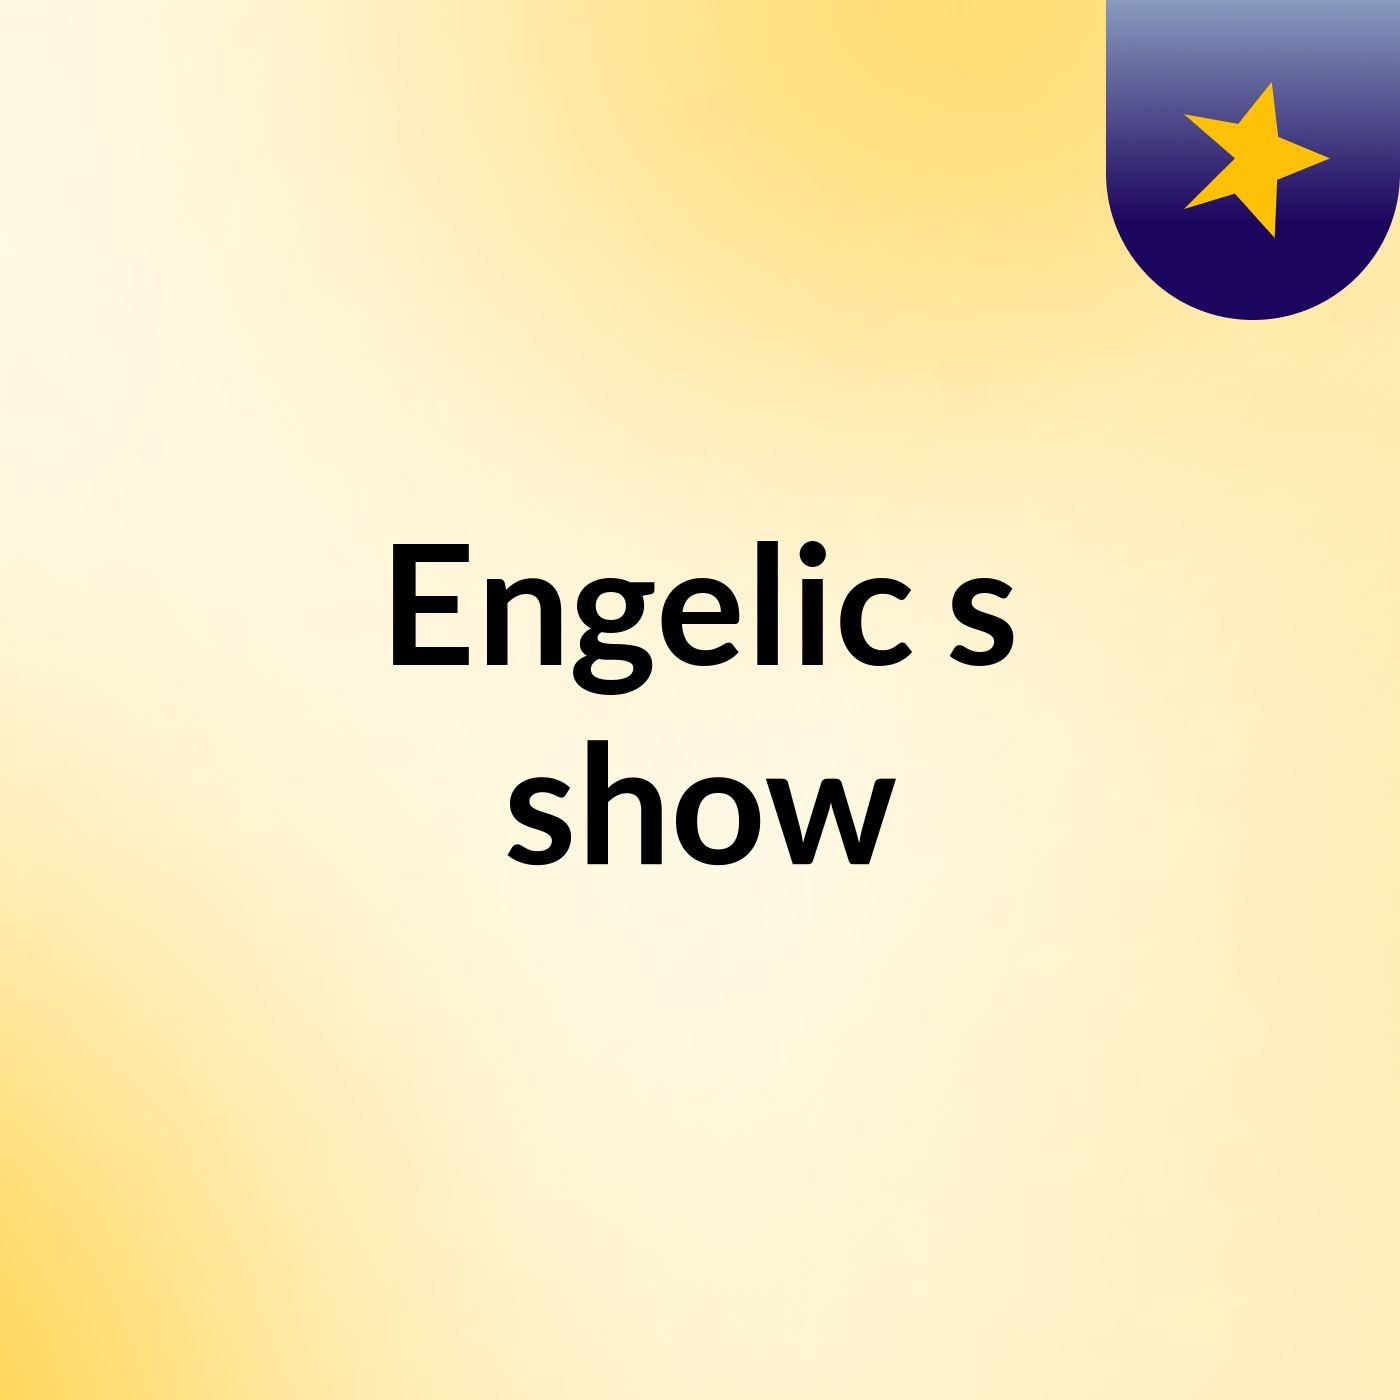 Engelic's show